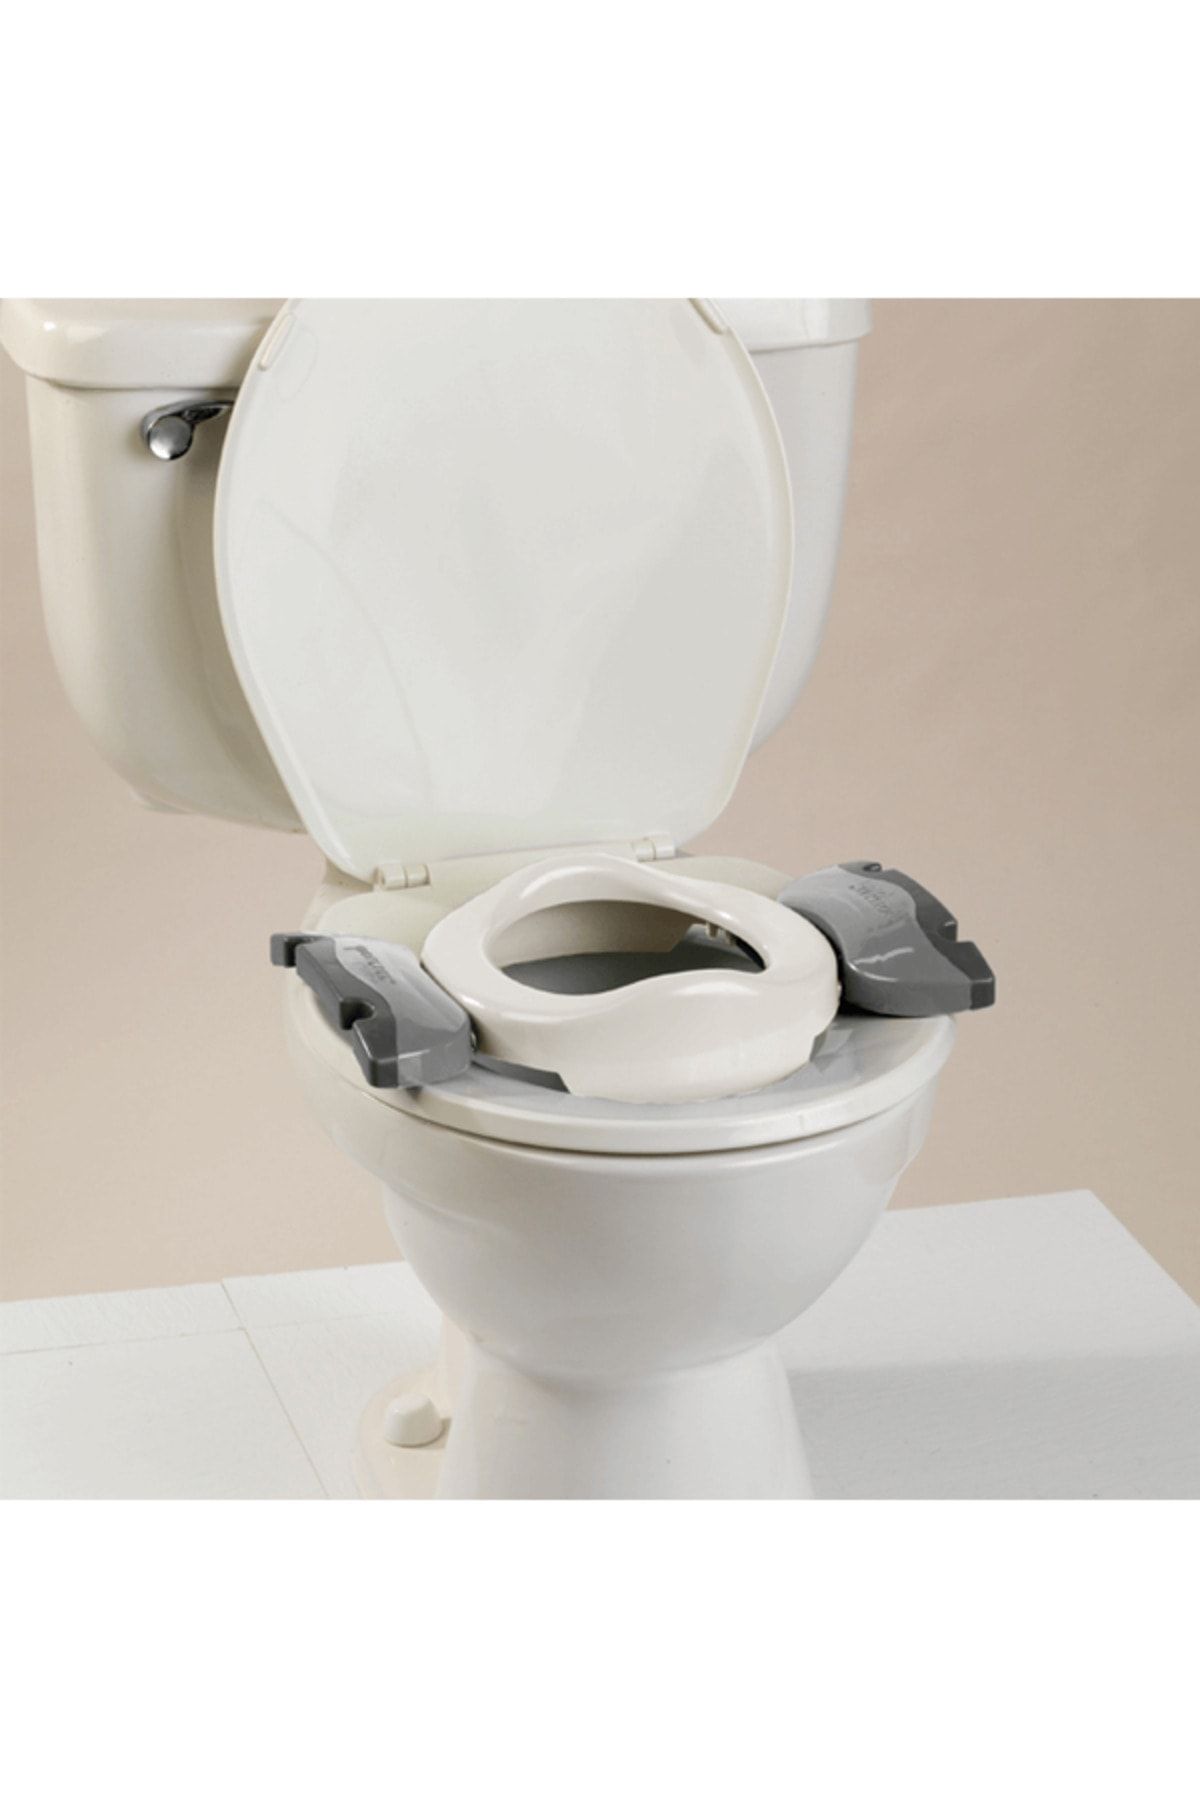 Potette Plus Dünyaca Ünlü & Ödüllü Portatif Lazımlık, Tuvalet Adaptörü Ve Eğitici Oturak (BEYAZ)